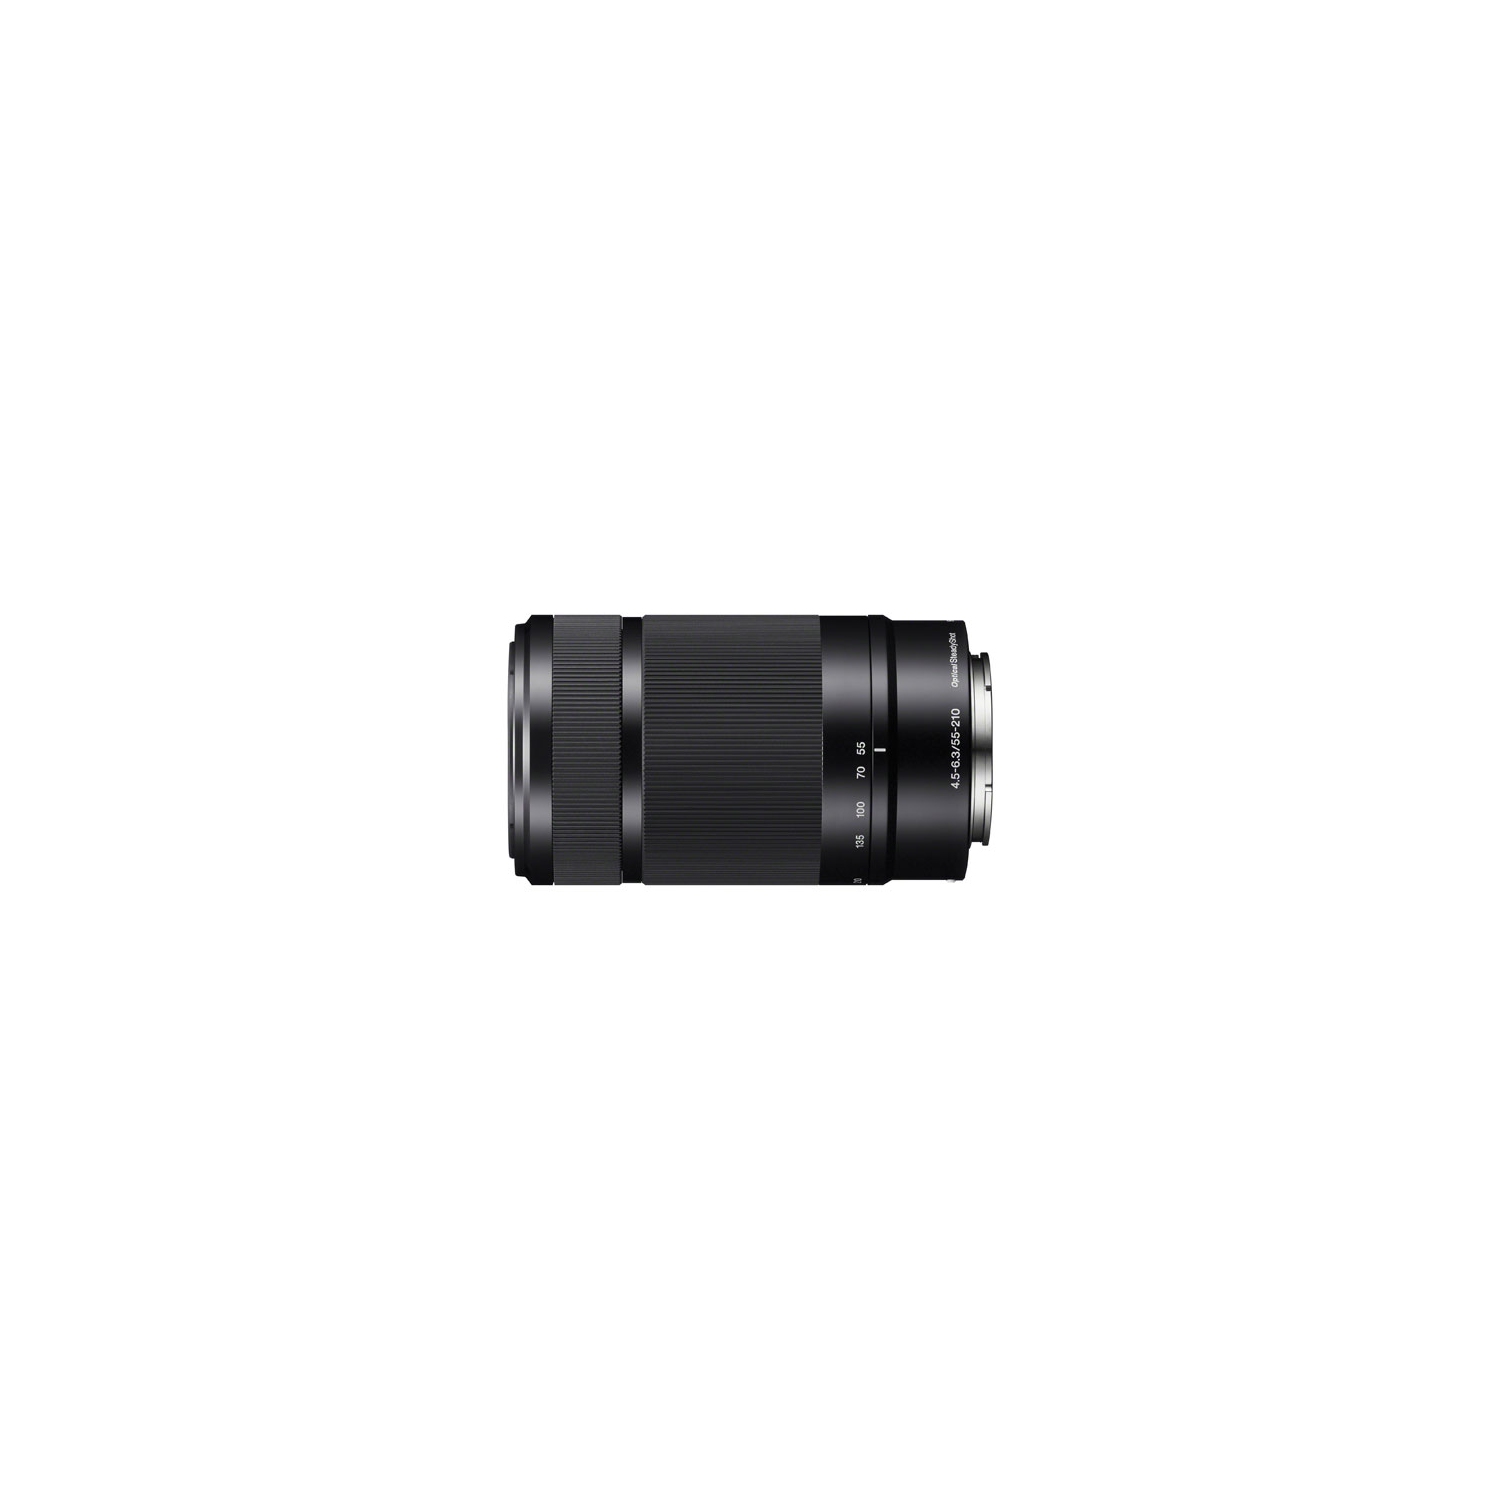 Sony E 55-210mm f/4.5-6.3 OSS Zoom Lens - Open Box